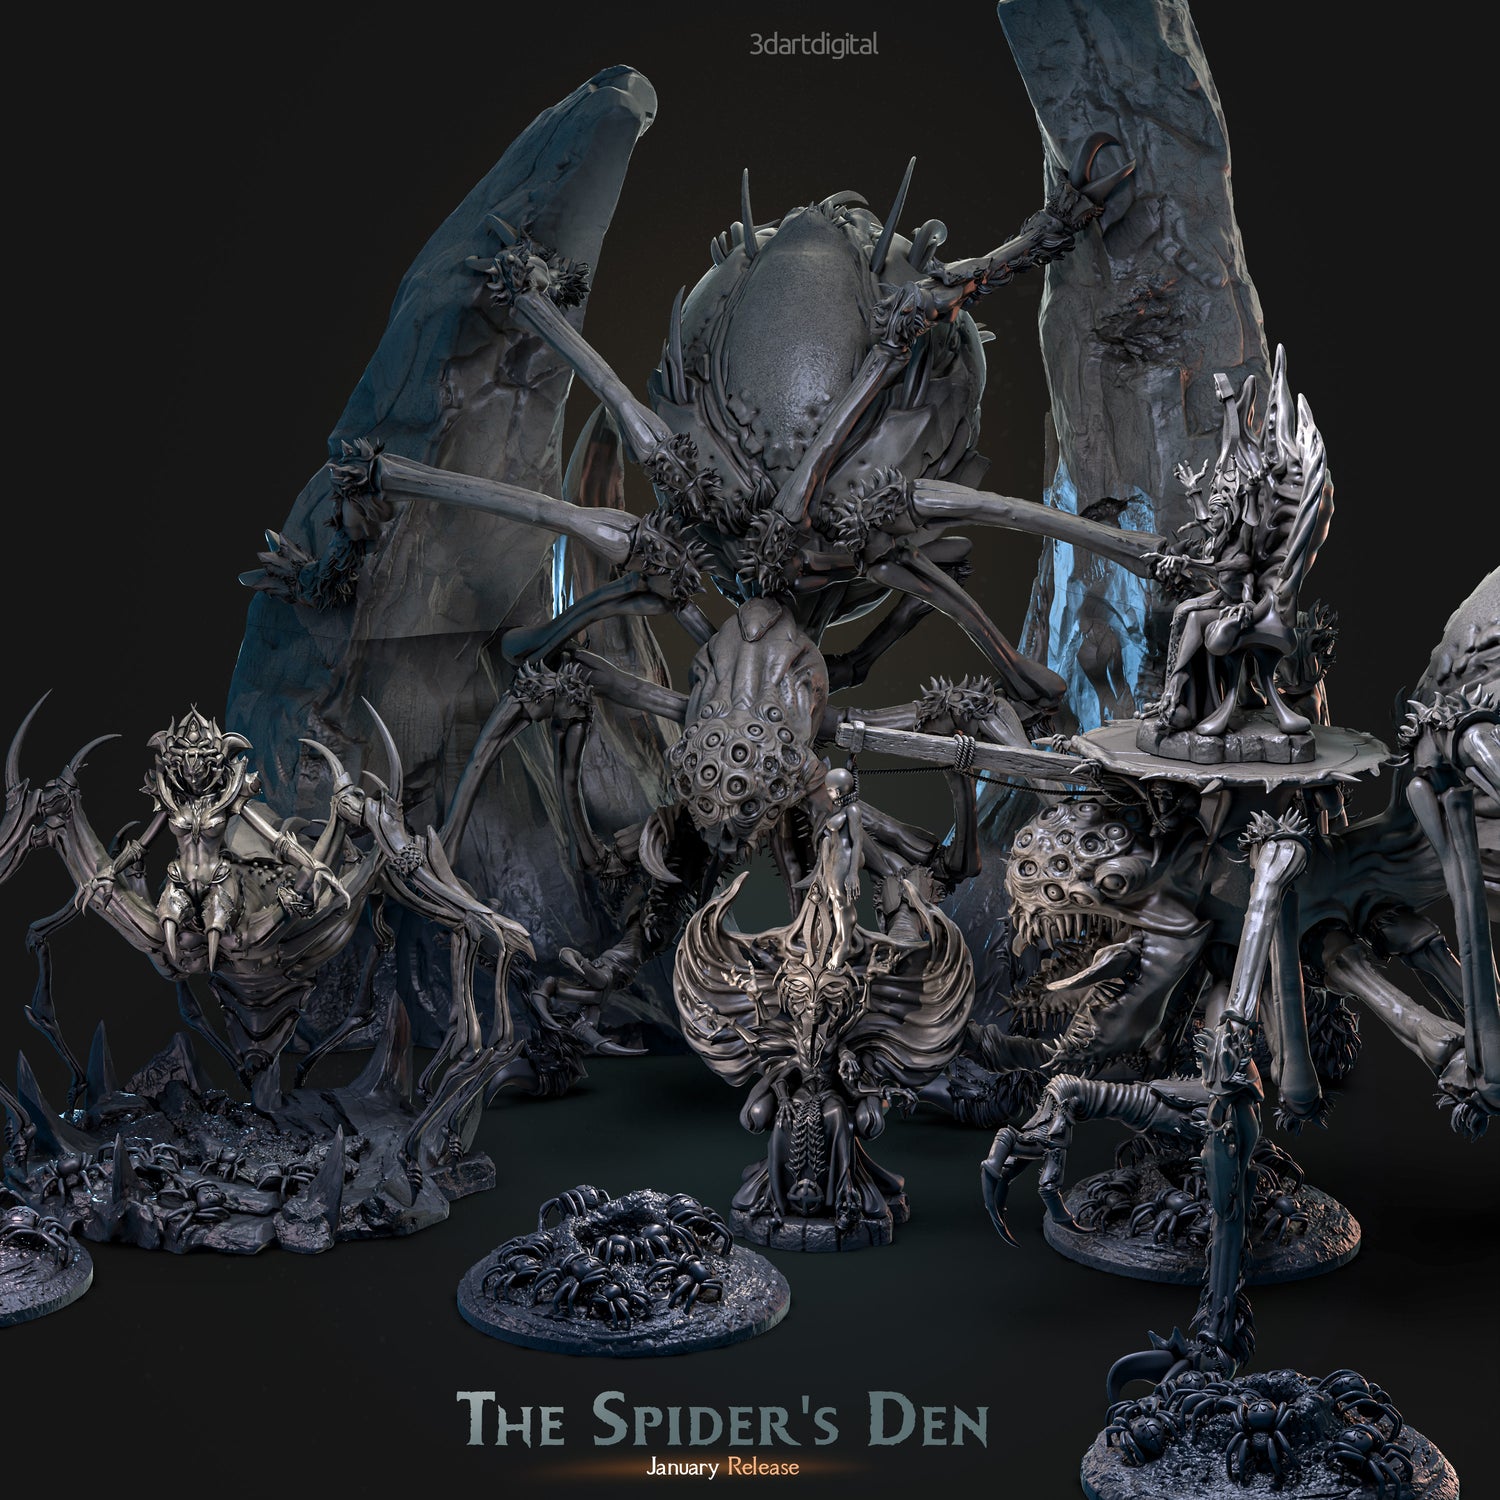 The Spider's Den